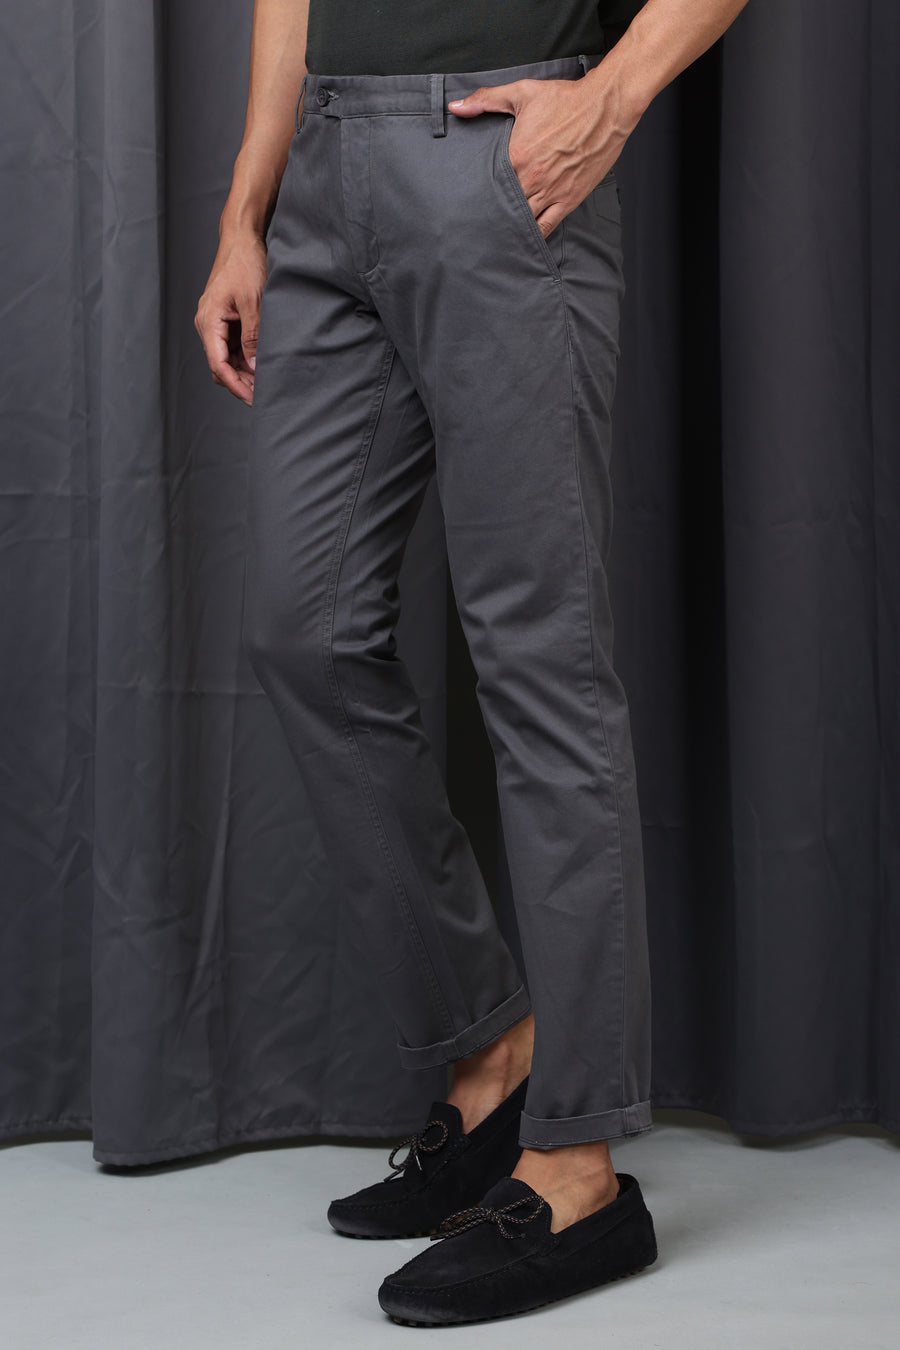 Pop - Premium Strech Trouser - Dk Grey